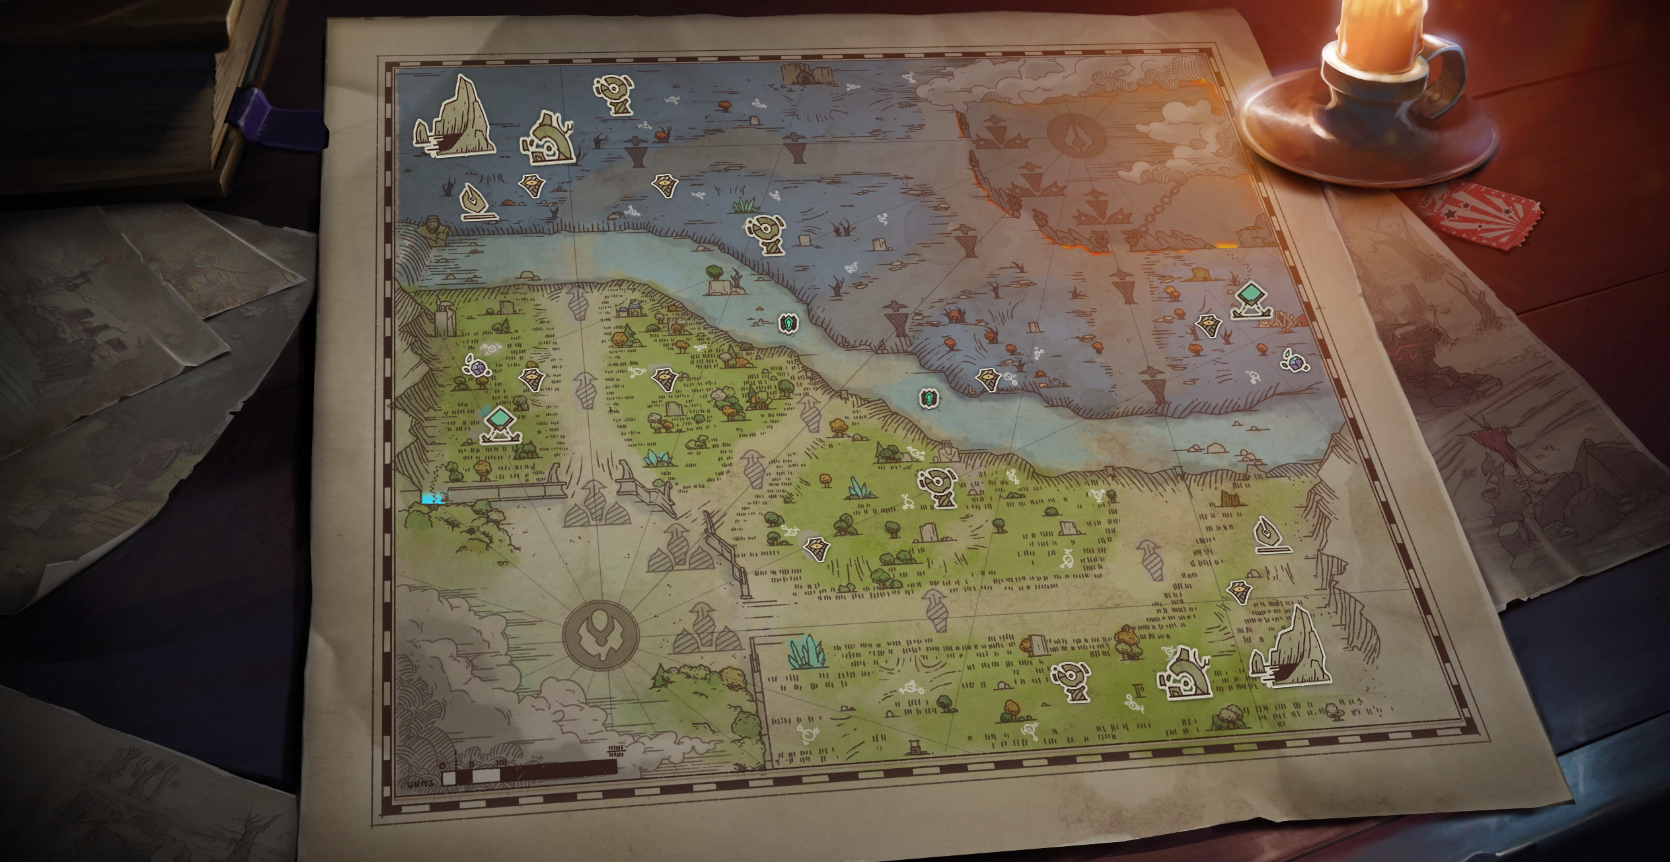 В Dota 2 вышло обновление "Новые горизонты": расширенная карта, артефакты и герои